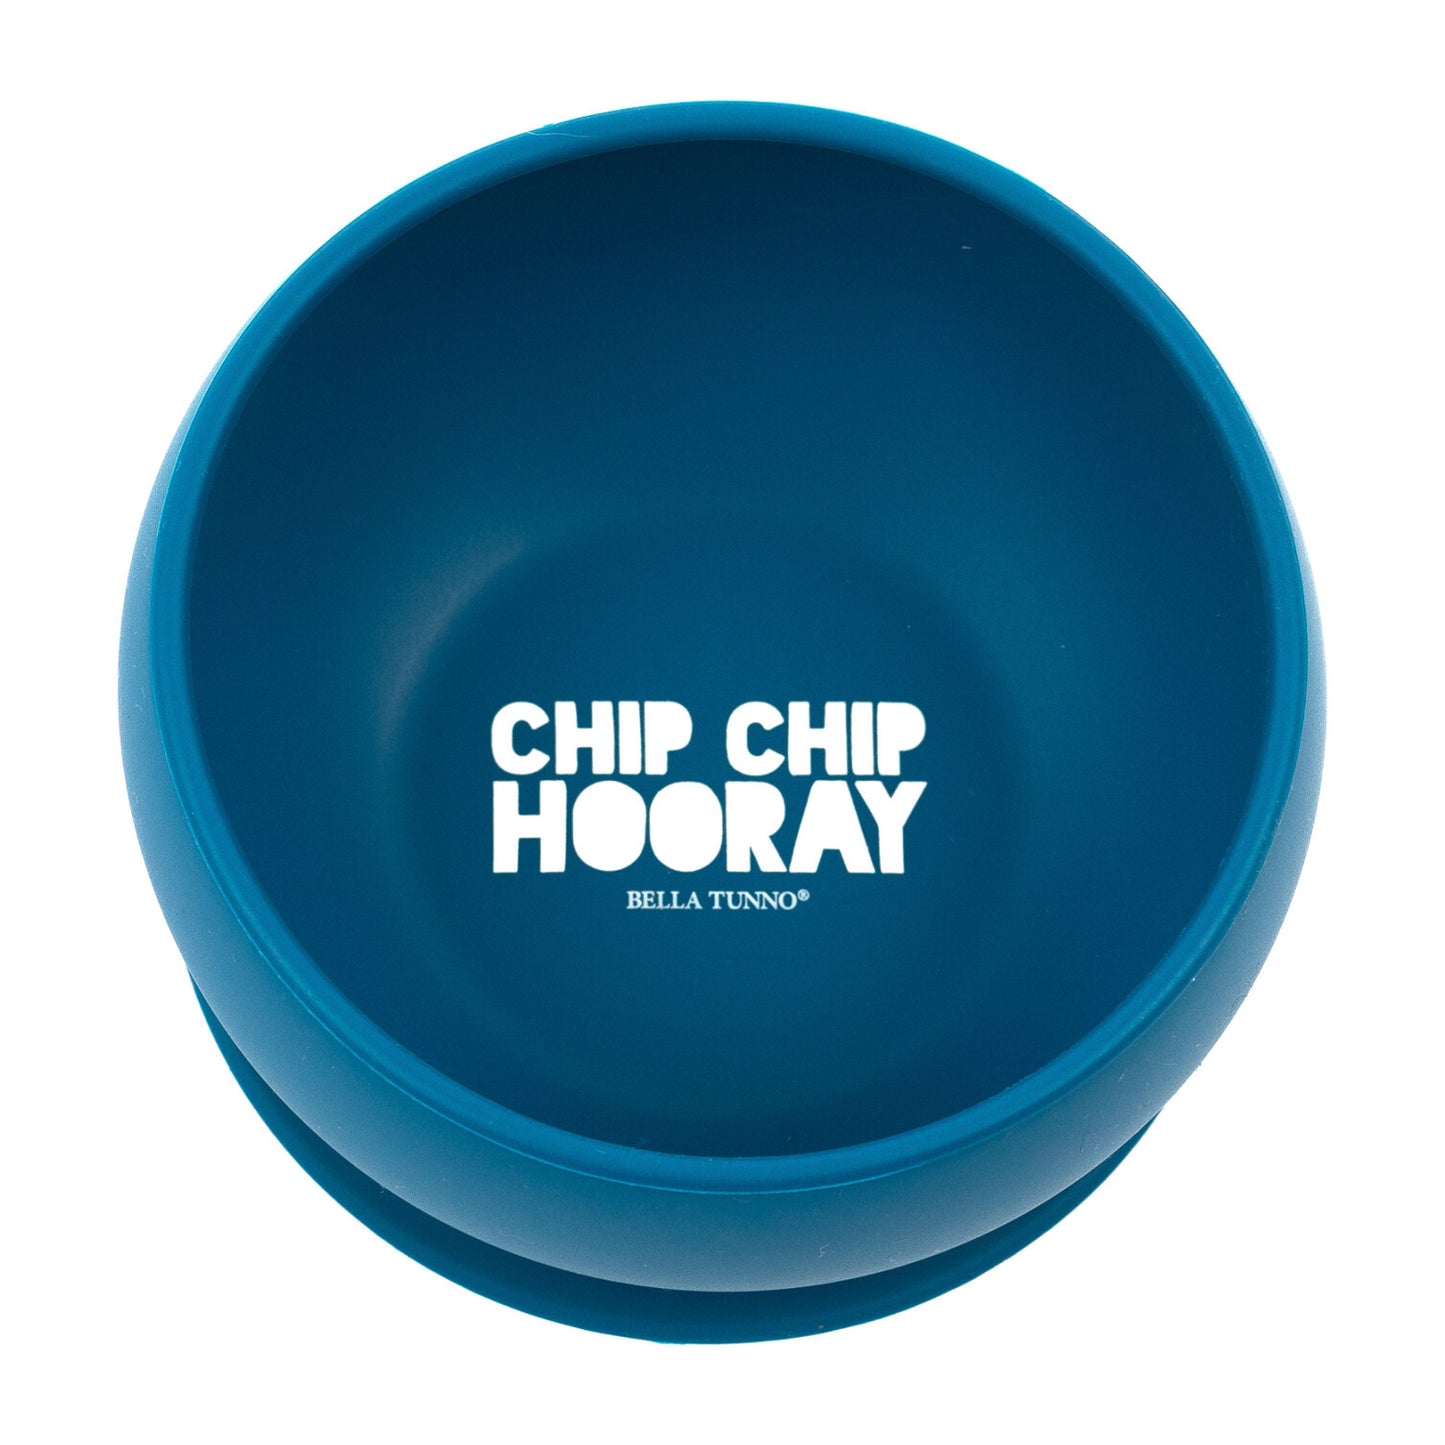 Bella Tunno "Chip Chip Hooray" Wonder Bowl